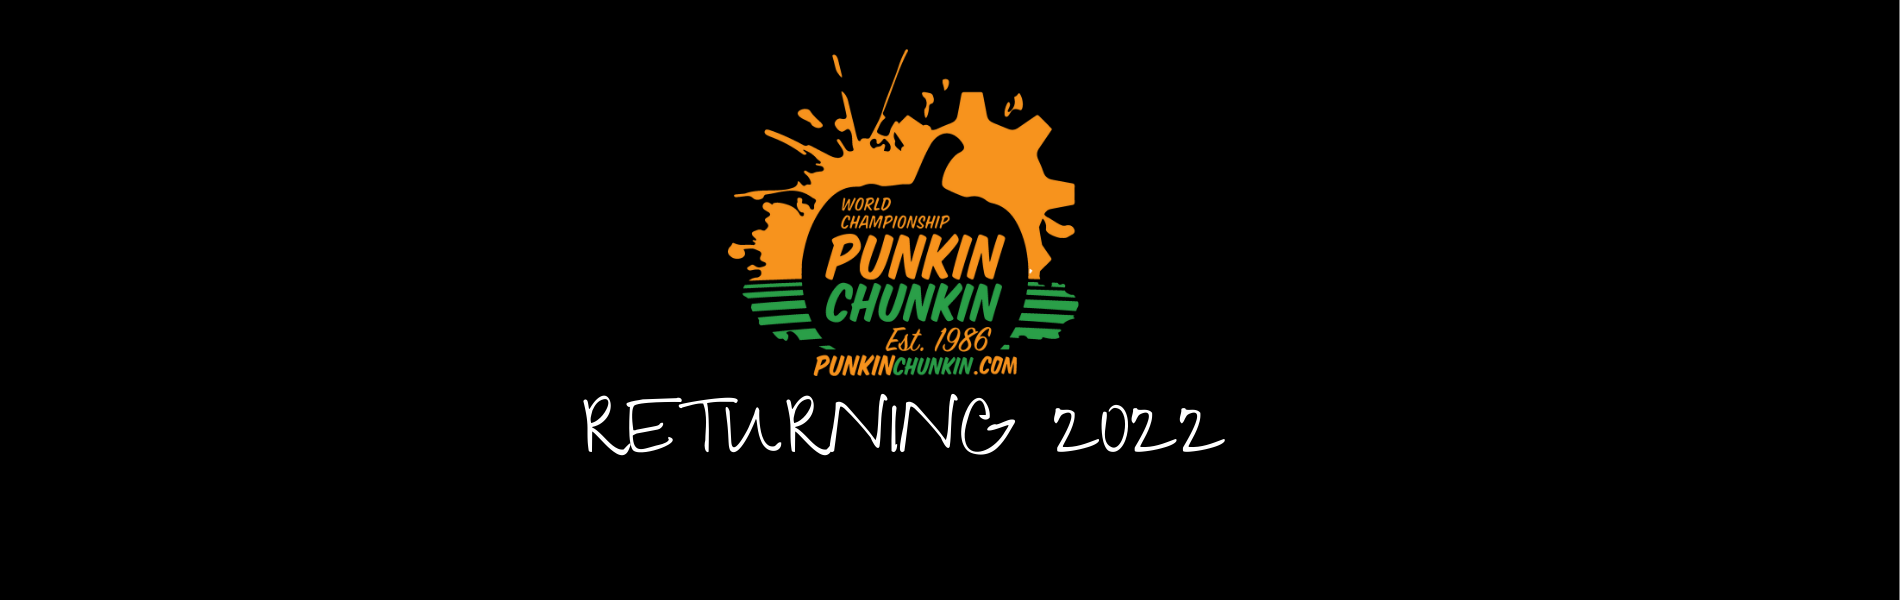 www.punkinchunkin.com